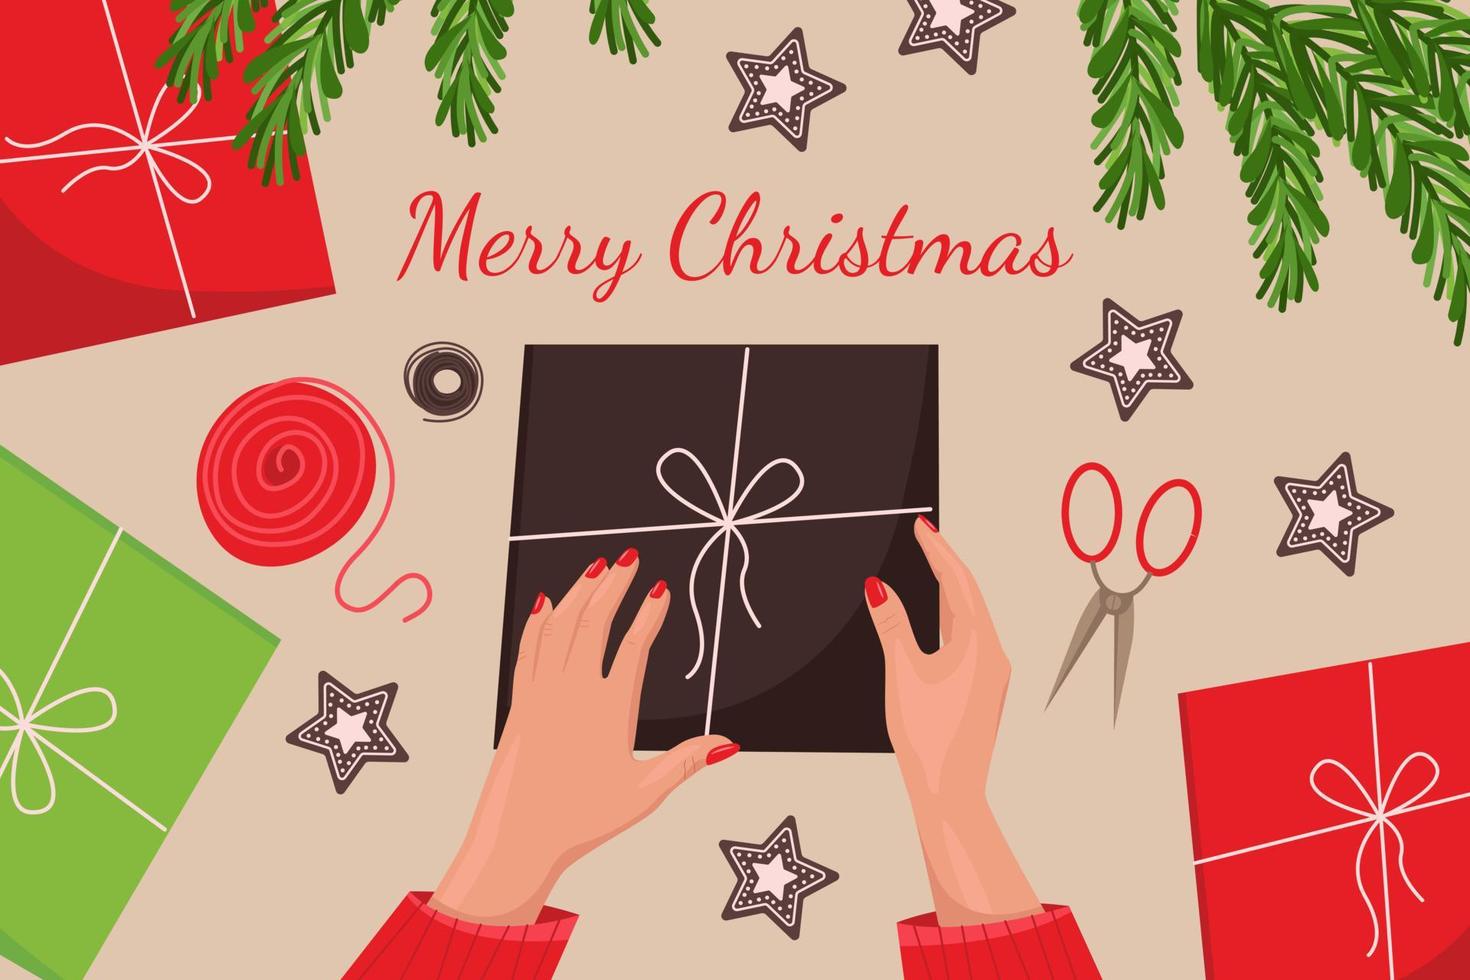 envolviendo cajas de regalo para navidad y año nuevo, vista superior, galletas de jengibre, ramas de árboles de navidad, regalos, manos femeninas con manicura roja. ilustración vectorial en estilo plano vector